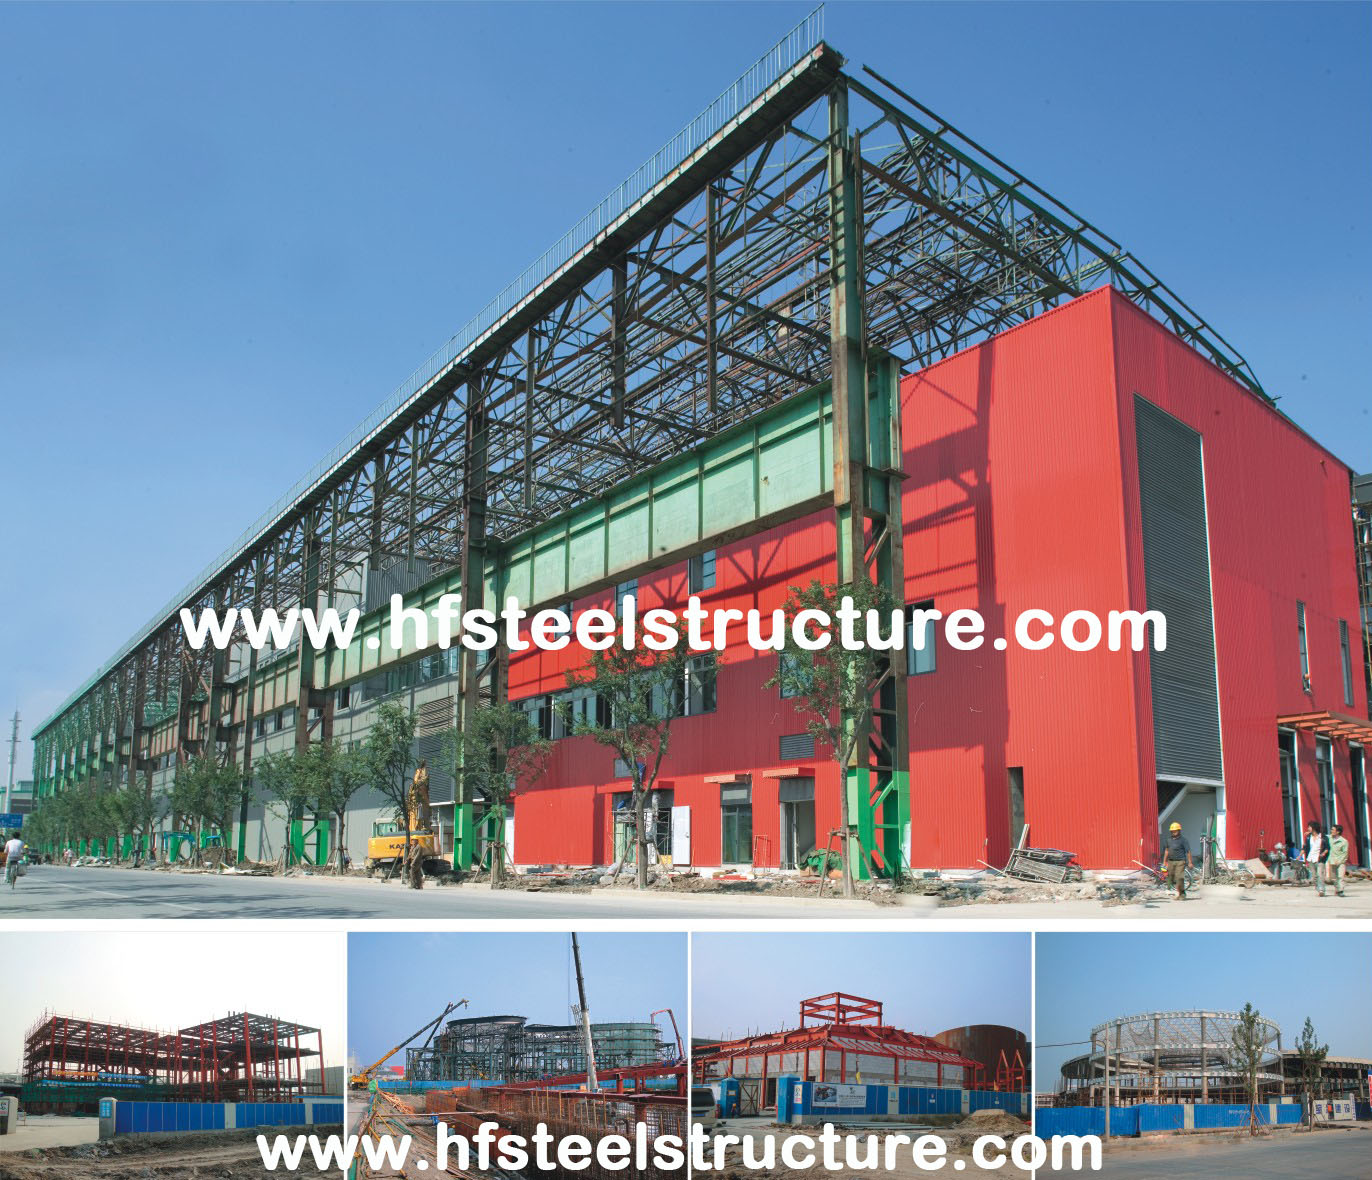 Le costruzioni d'acciaio commerciali industriali del centro commerciale raccolgono la tecnologia specializzata